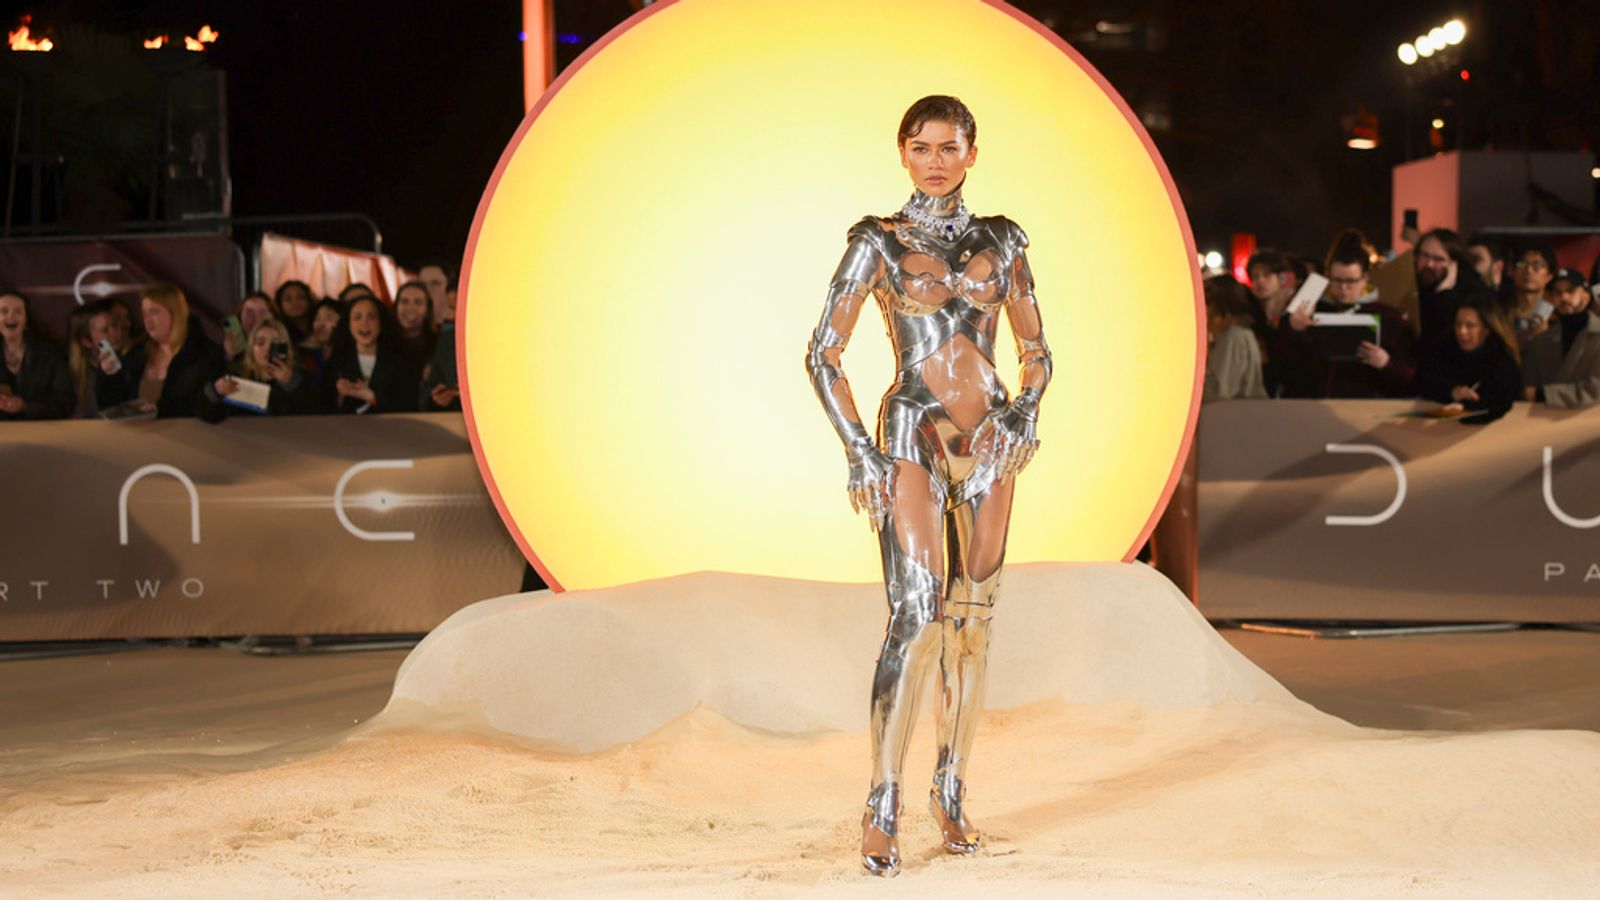 Zendaya vjedh shfaqjen në modën futuriste në premierën e Dune